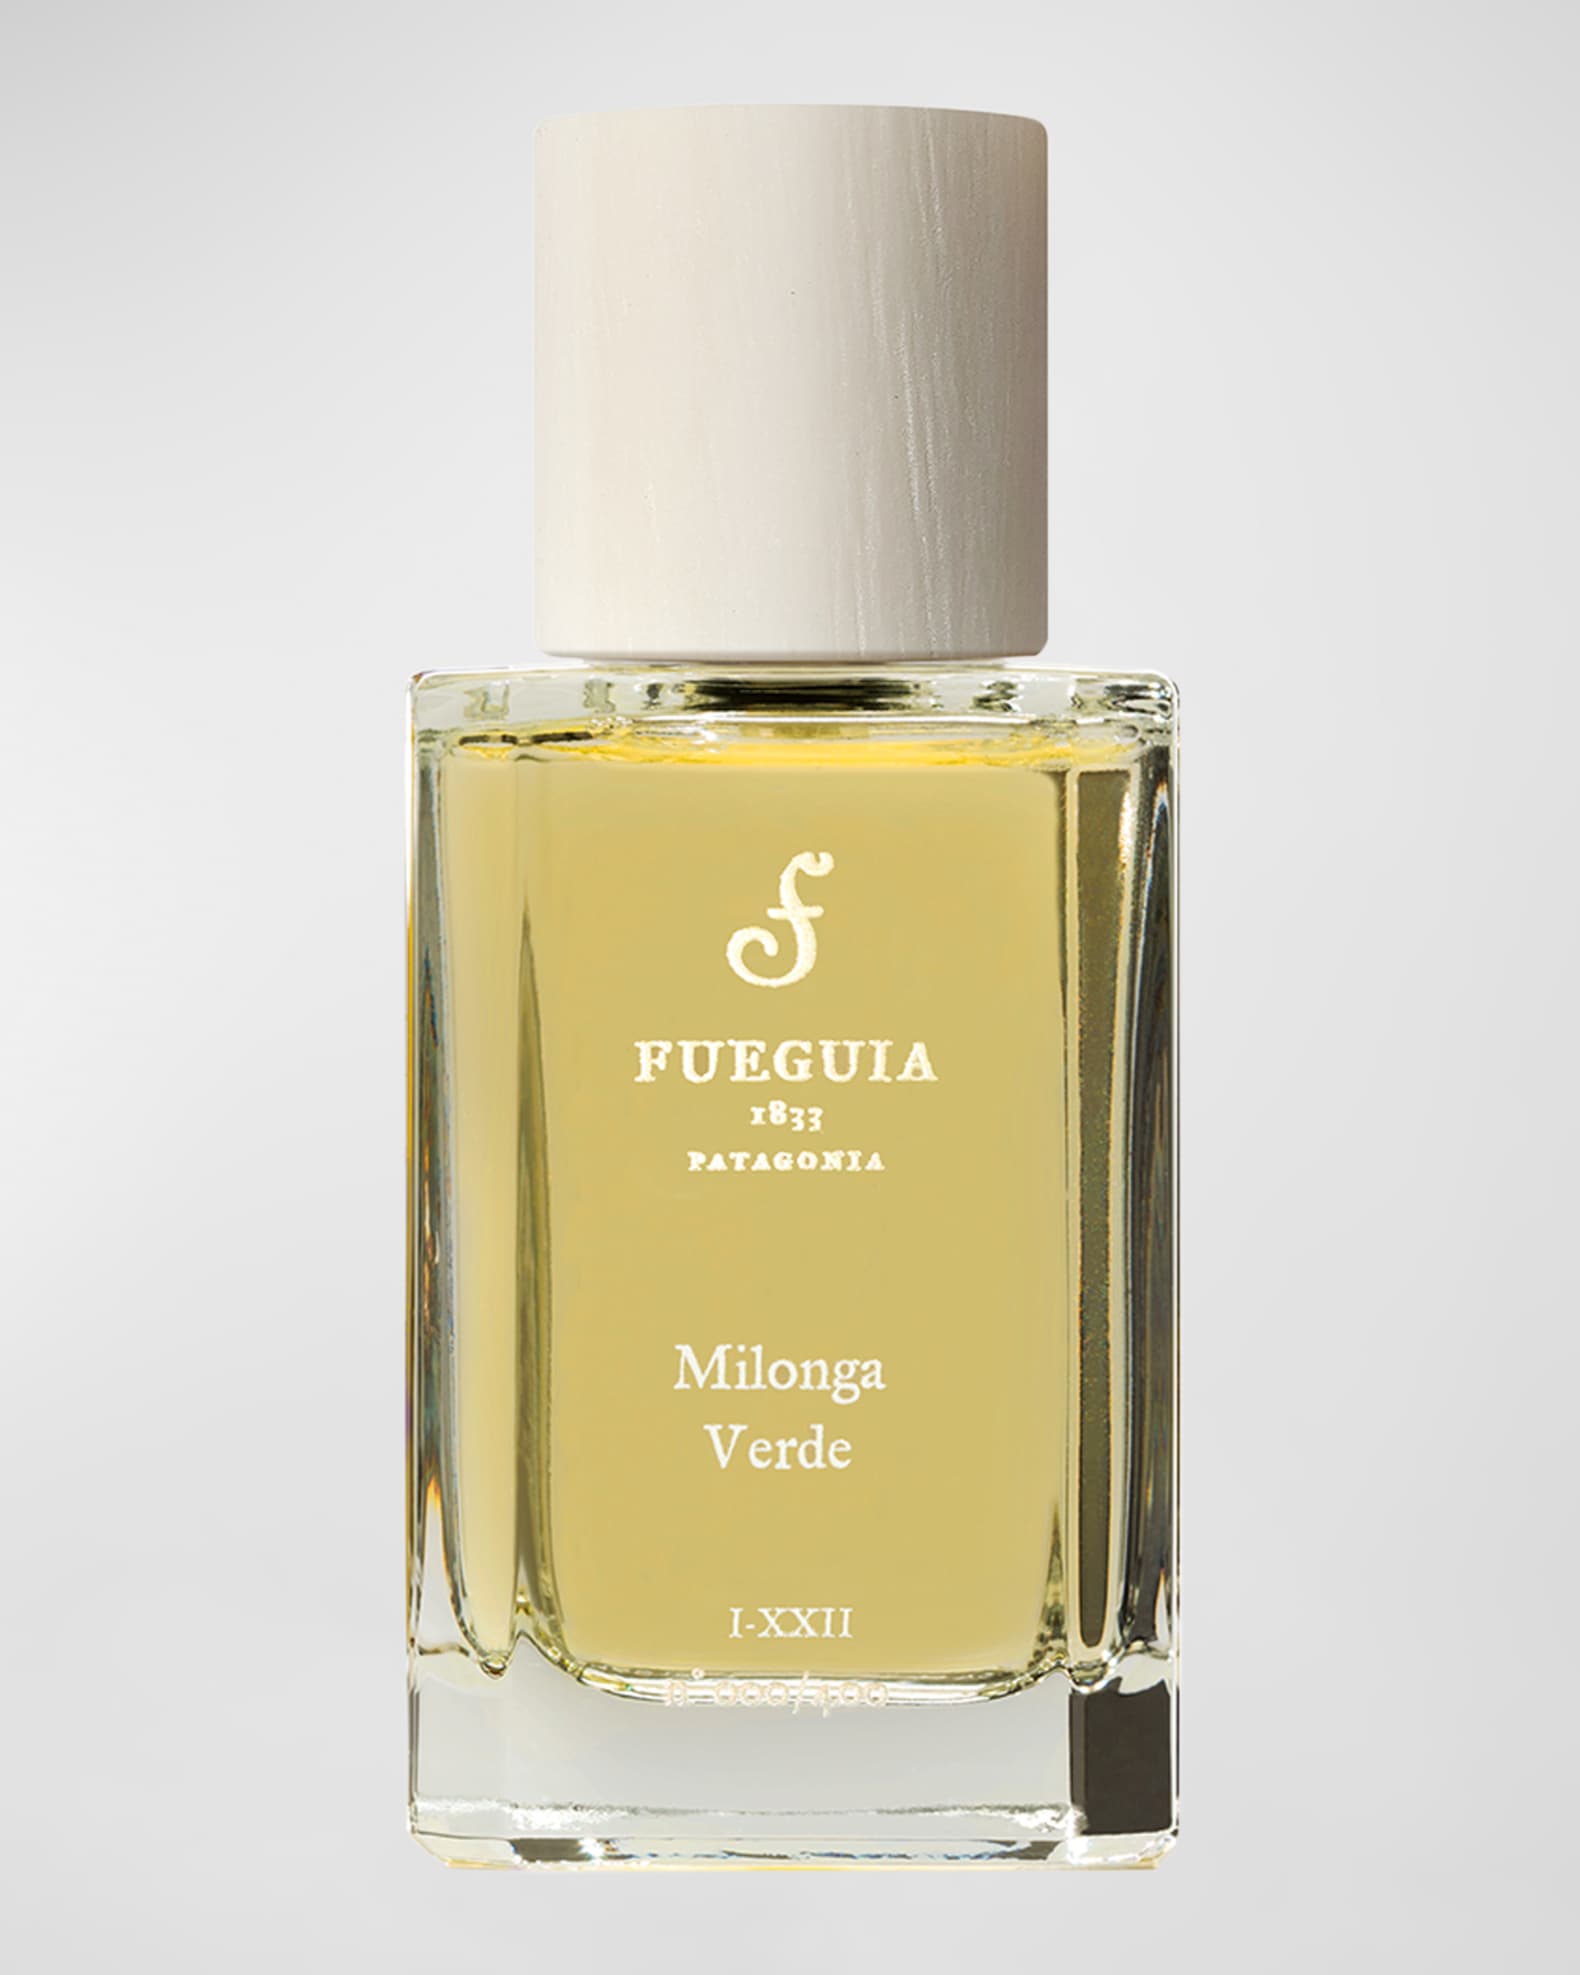 FUEGUIA 1833 Milonga Verde Eau de Parfum, 1.7 oz. | Neiman Marcus